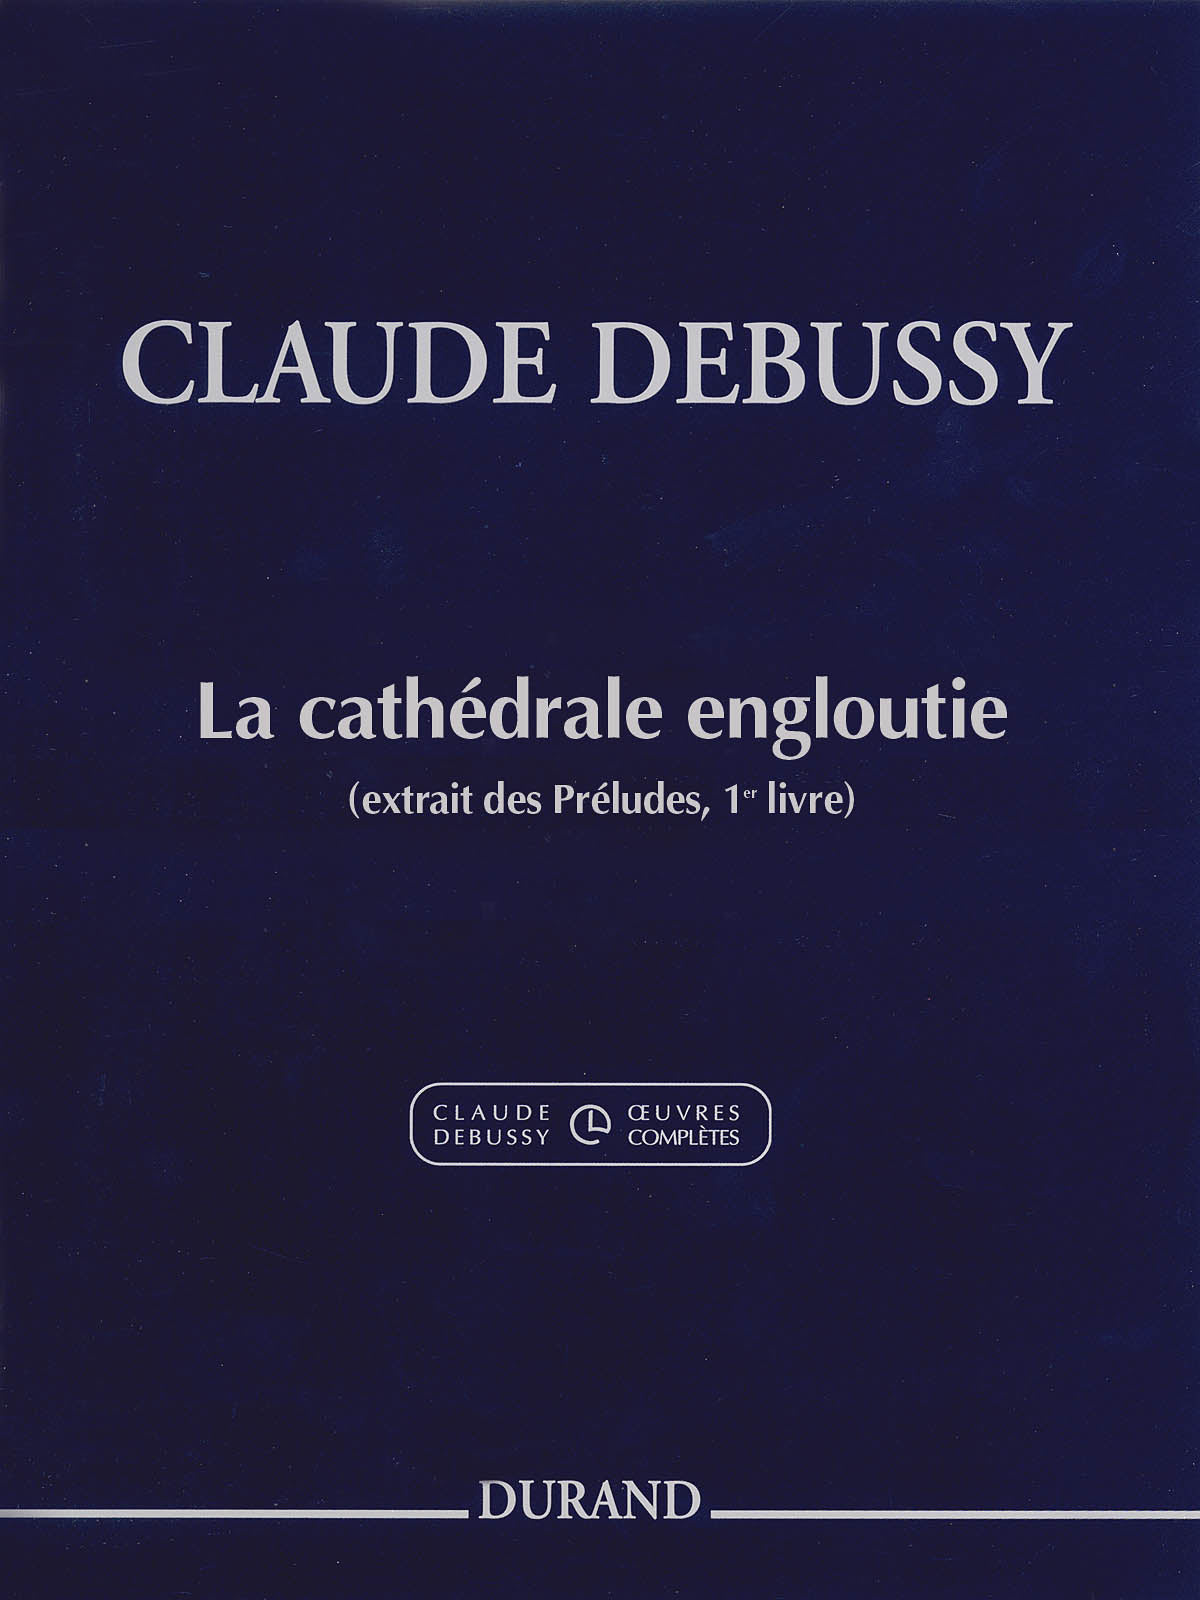 Debussy: La cathédrale engloutie